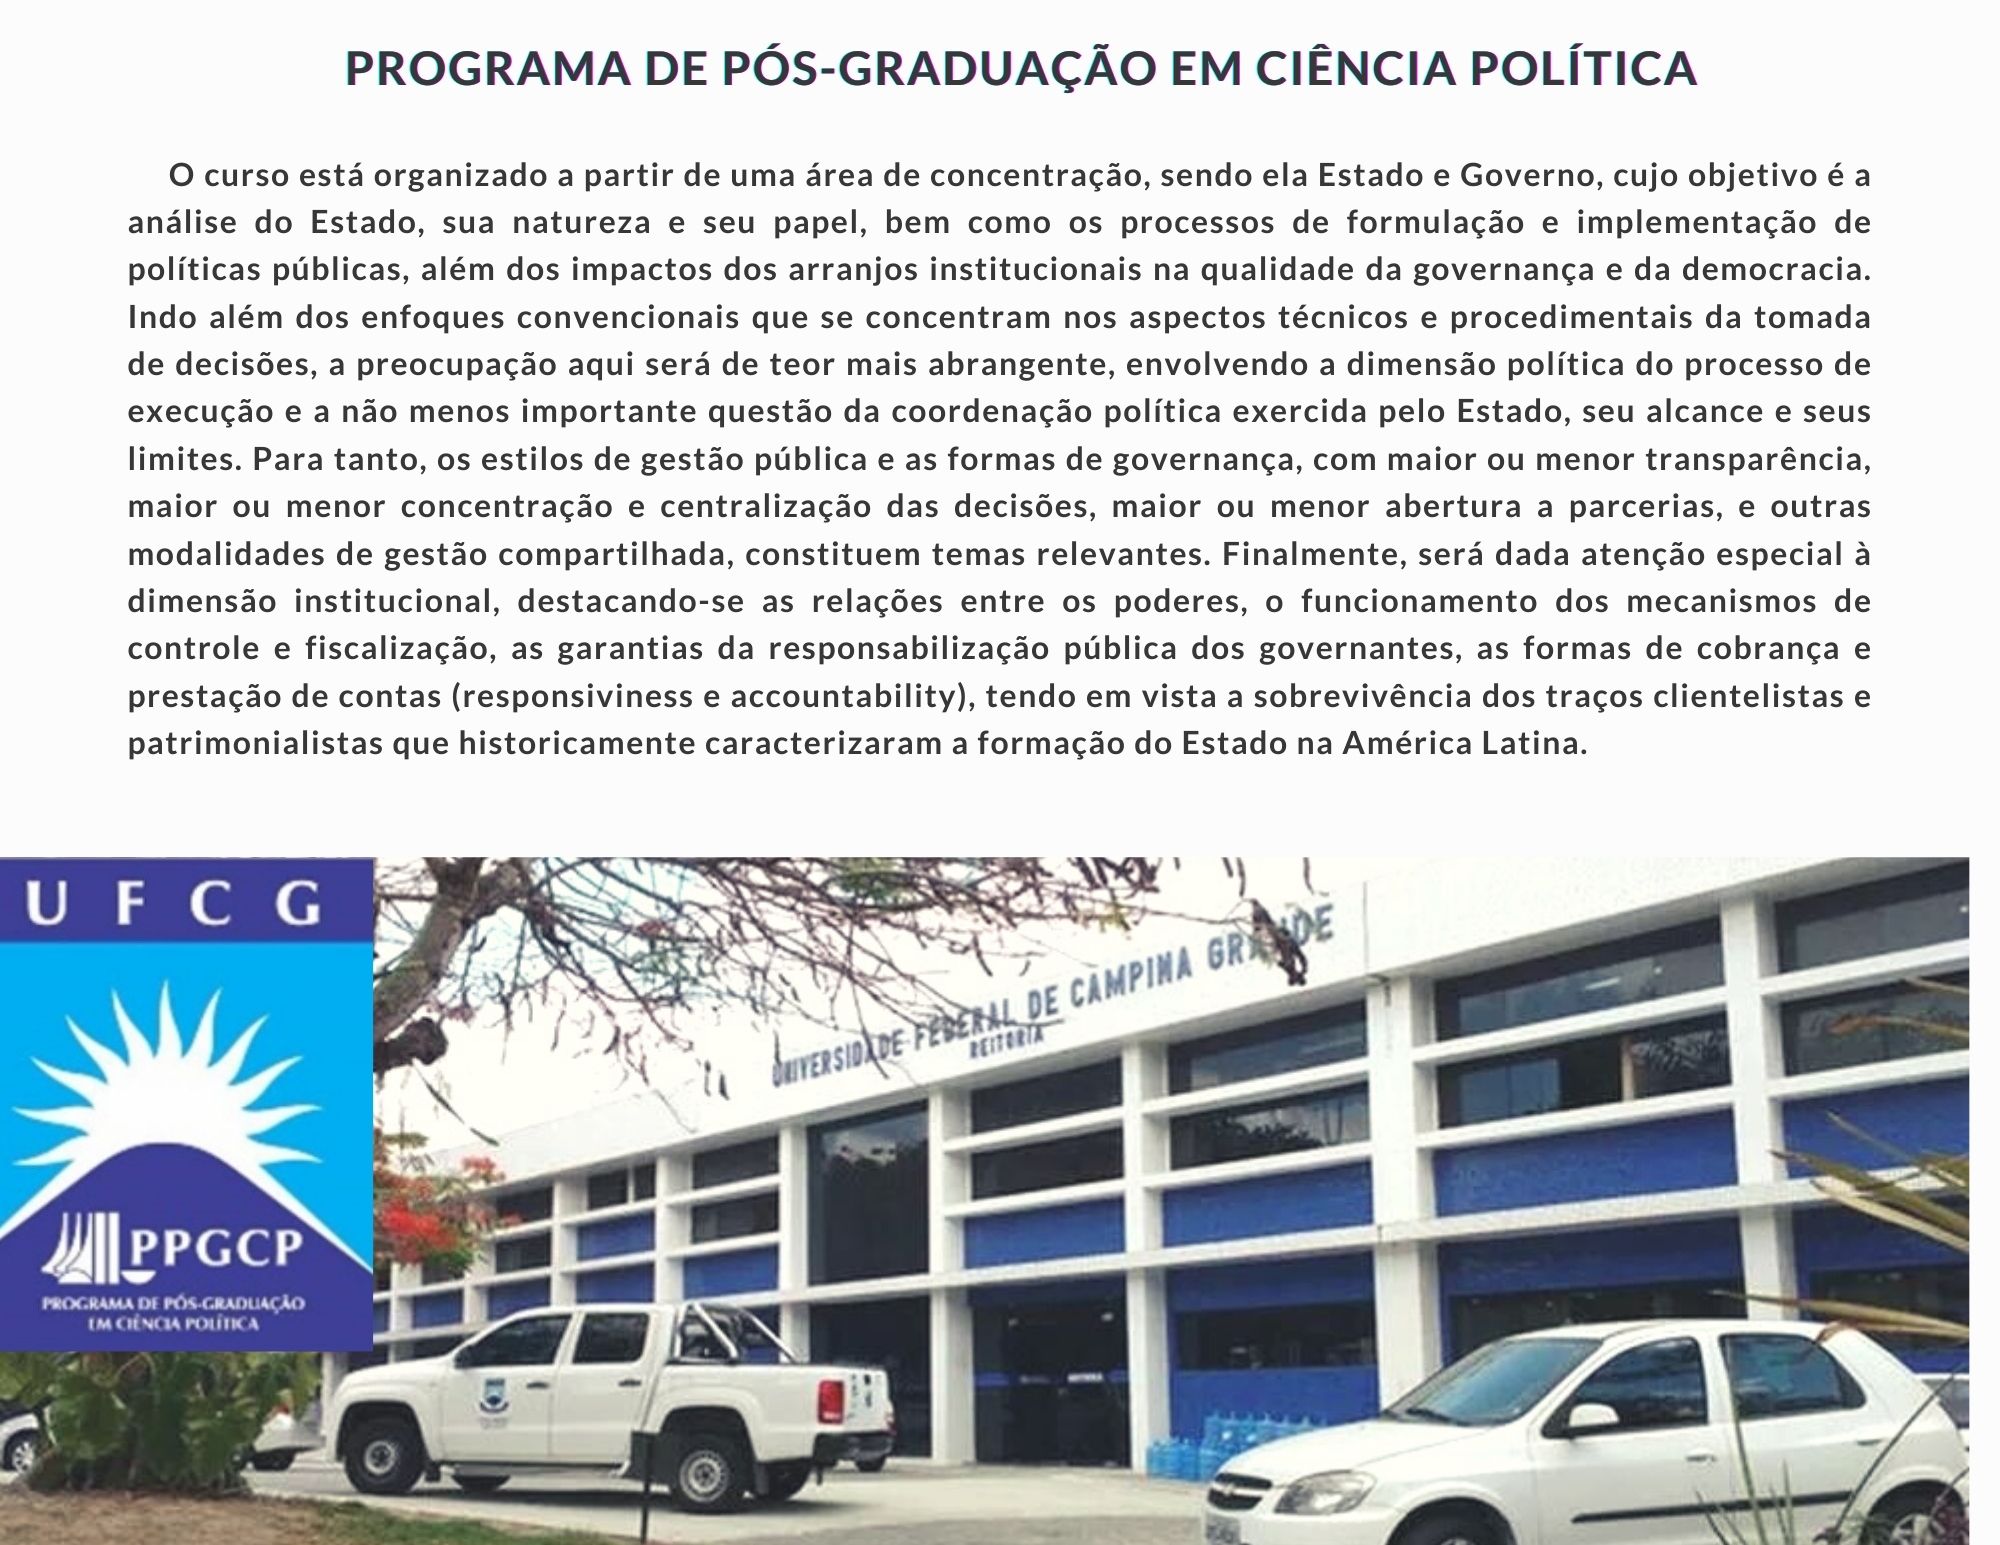 Programa de Pós-Graduação em Ciência Política